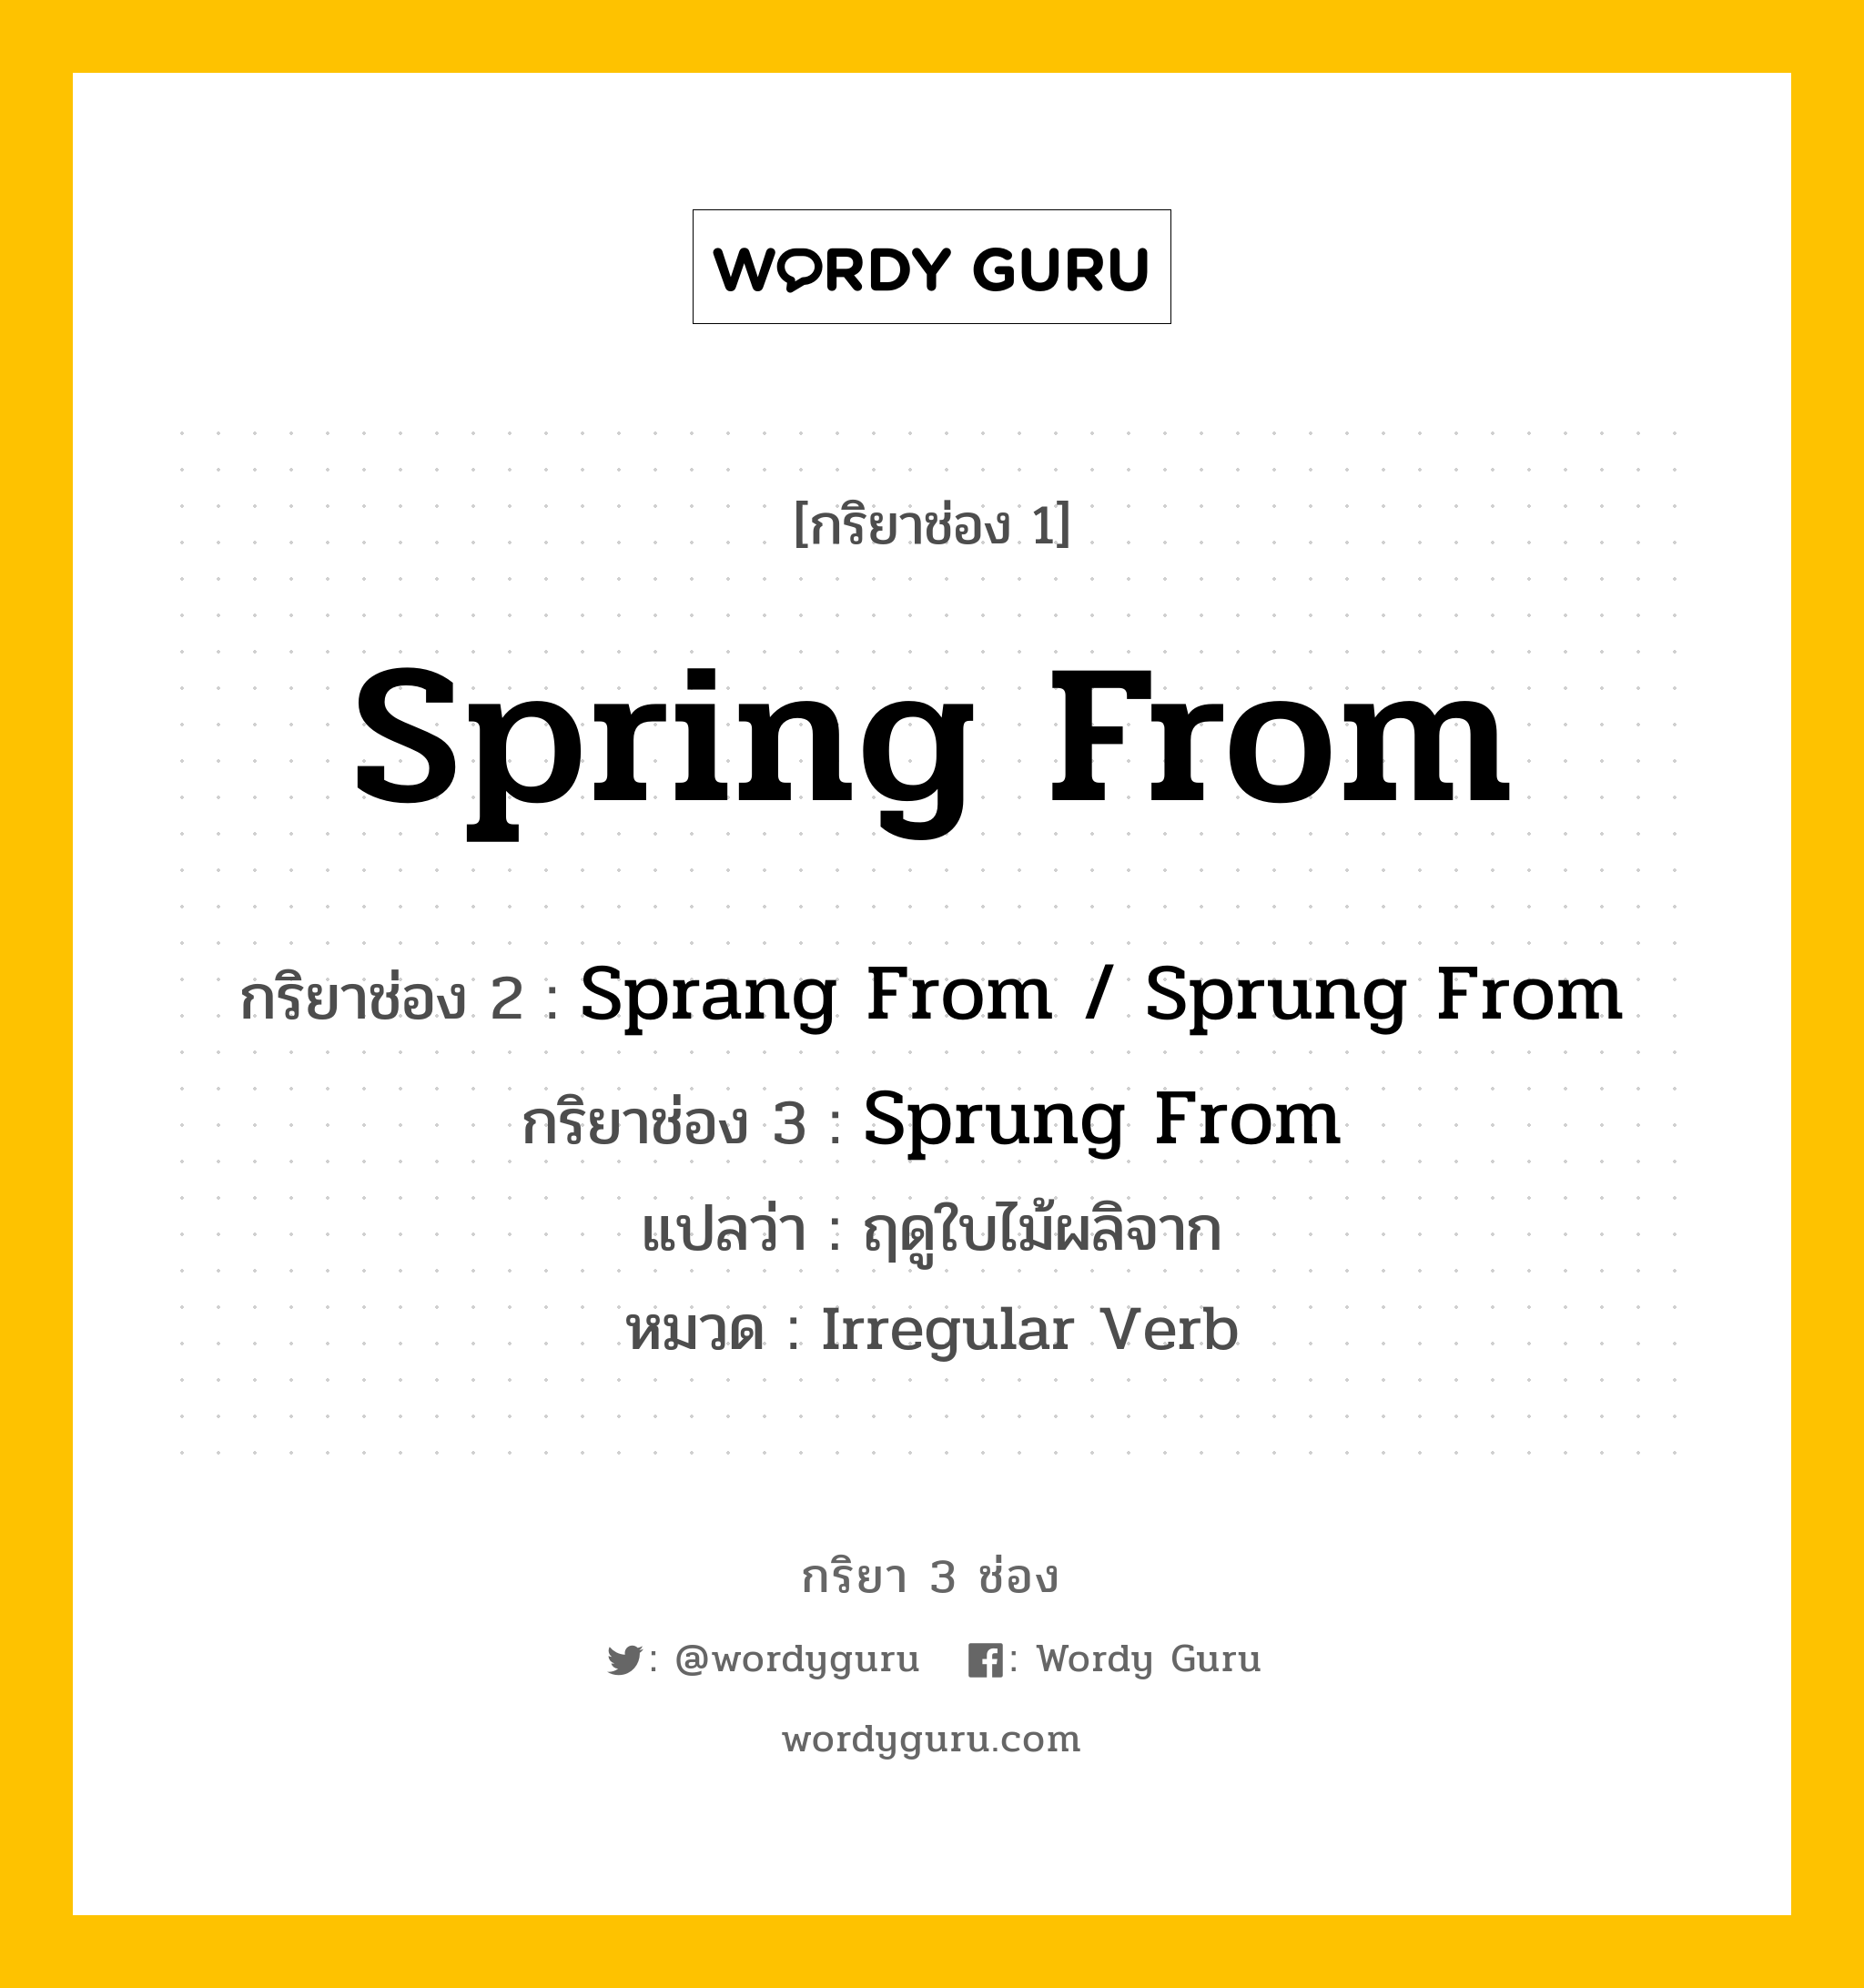 กริยา 3 ช่อง ของ Spring From คืออะไร?, กริยาช่อง 1 Spring From กริยาช่อง 2 Sprang From / Sprung From กริยาช่อง 3 Sprung From แปลว่า ฤดูใบไม้ผลิจาก หมวด Irregular Verb หมวด Irregular Verb